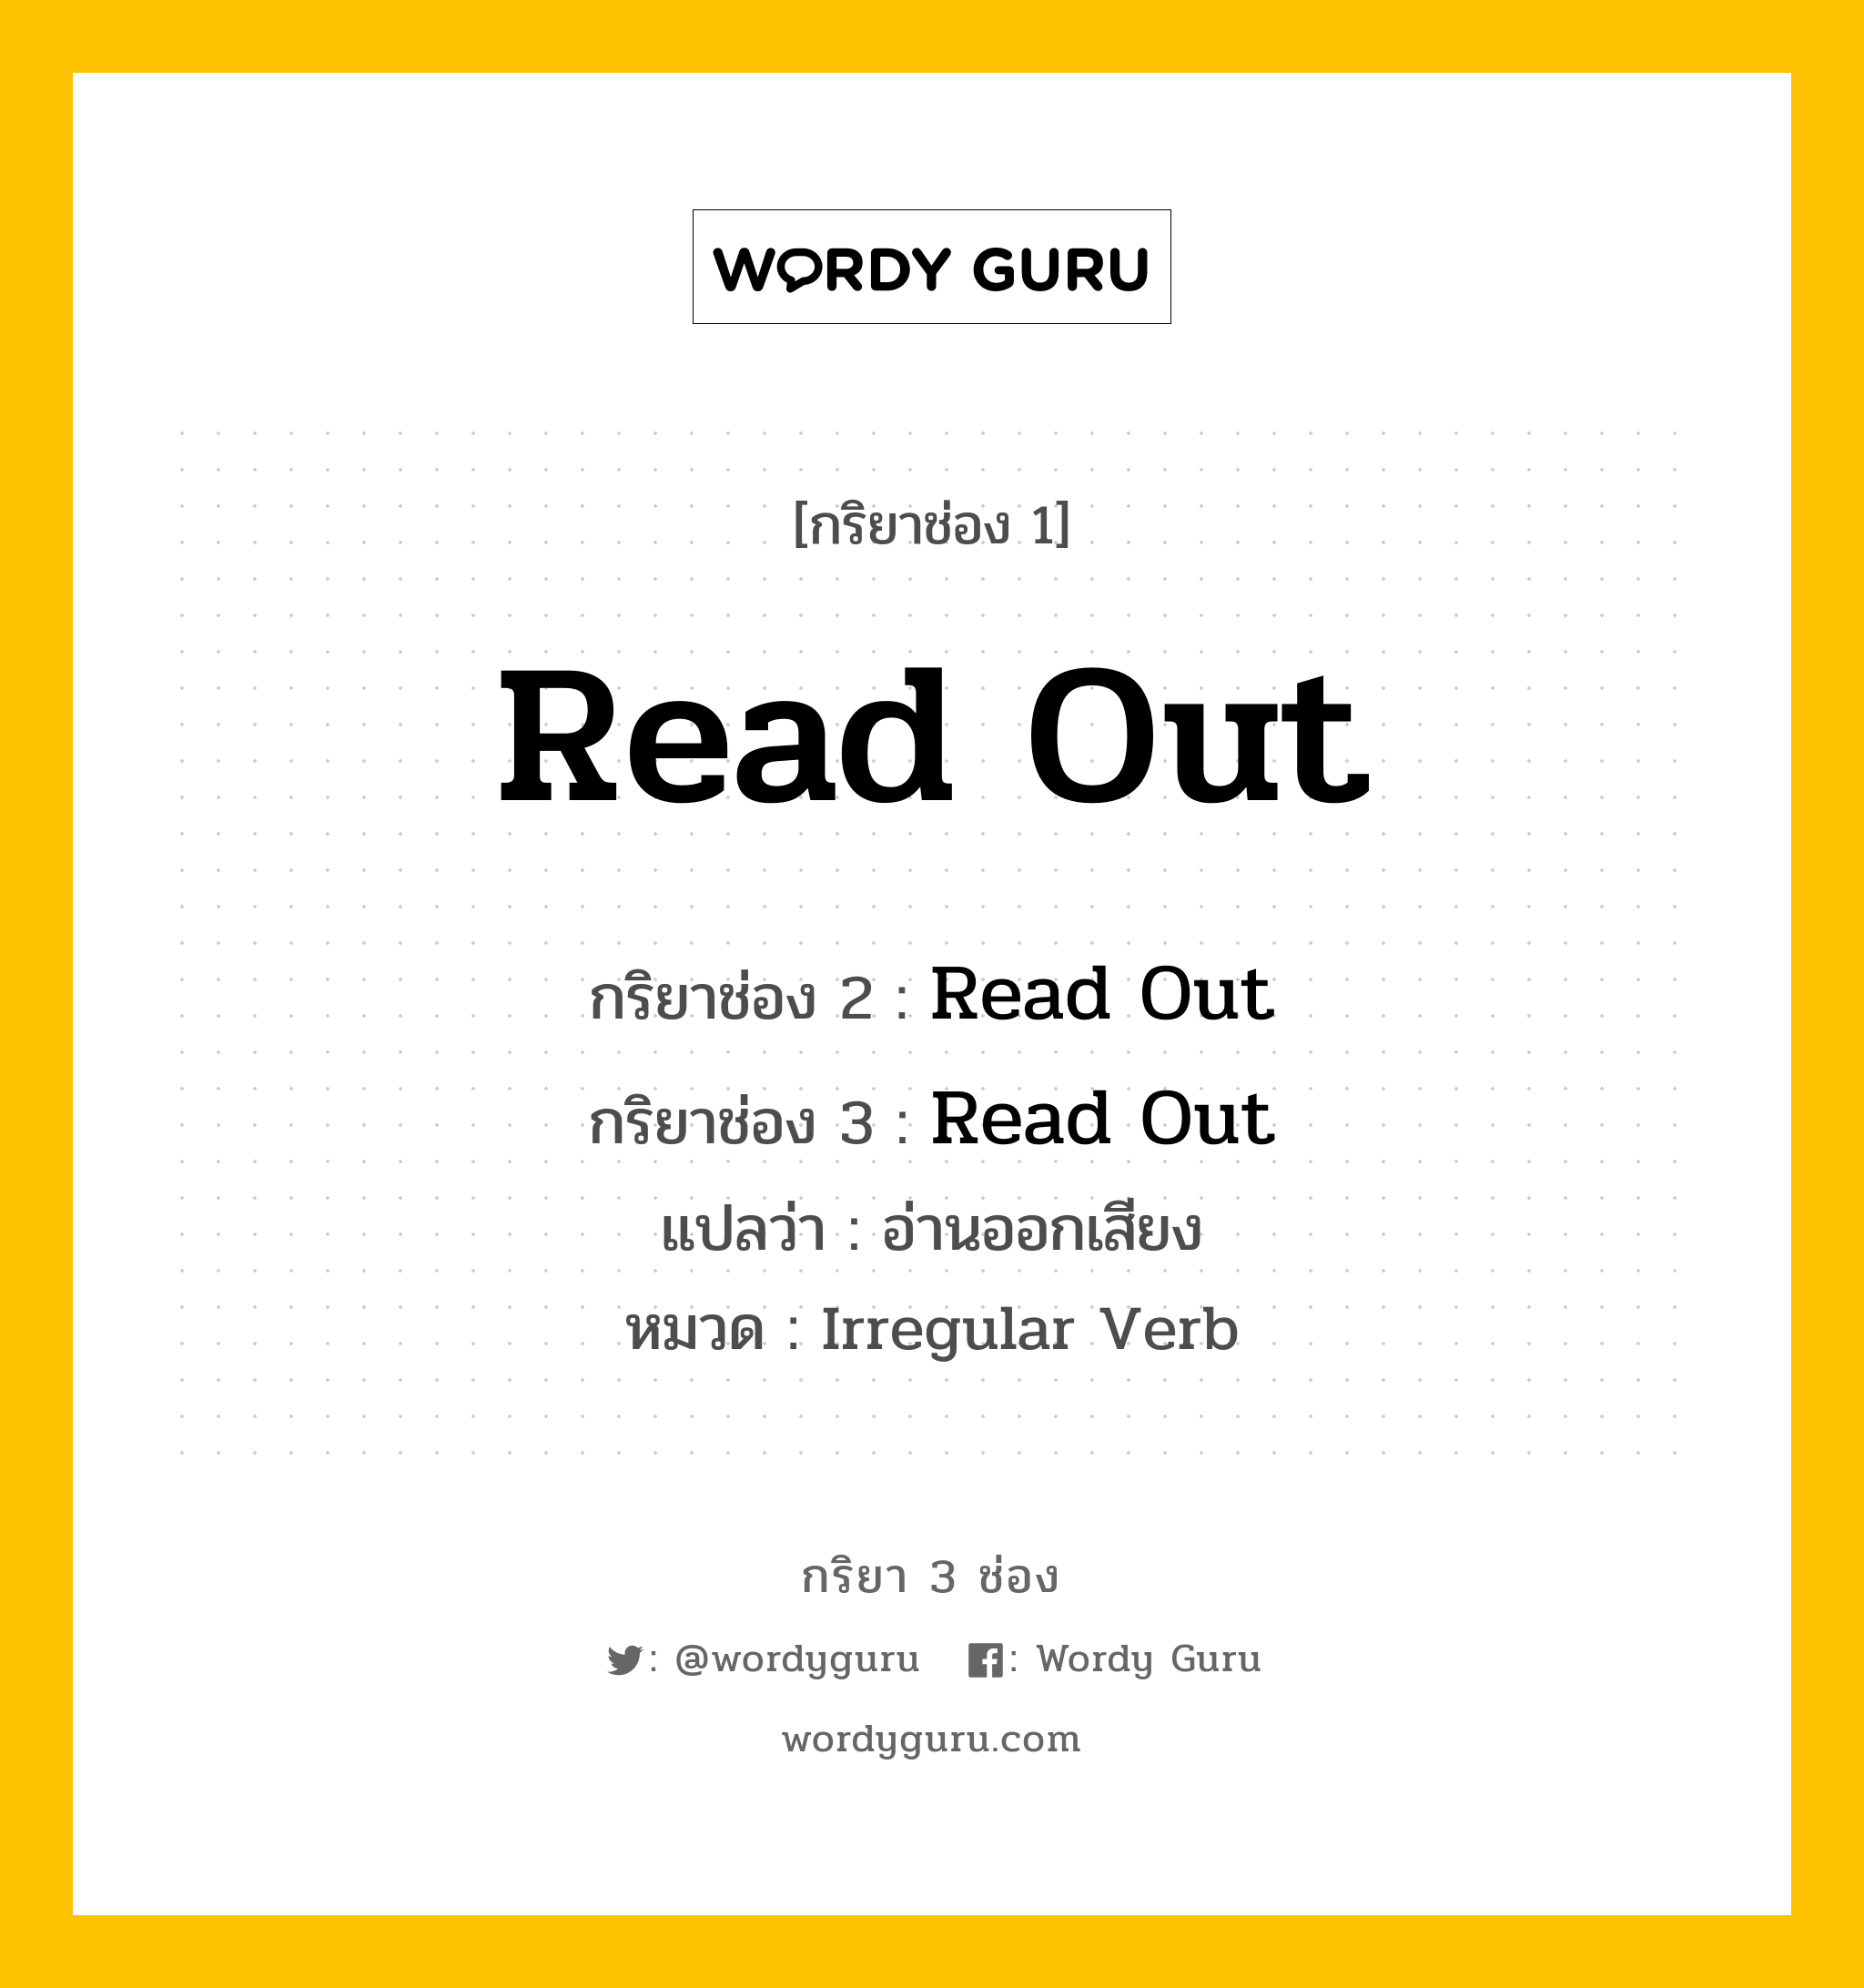 กริยา 3 ช่อง: Read Out ช่อง 2 Read Out ช่อง 3 คืออะไร, กริยาช่อง 1 Read Out กริยาช่อง 2 Read Out กริยาช่อง 3 Read Out แปลว่า อ่านออกเสียง หมวด Irregular Verb หมวด Irregular Verb